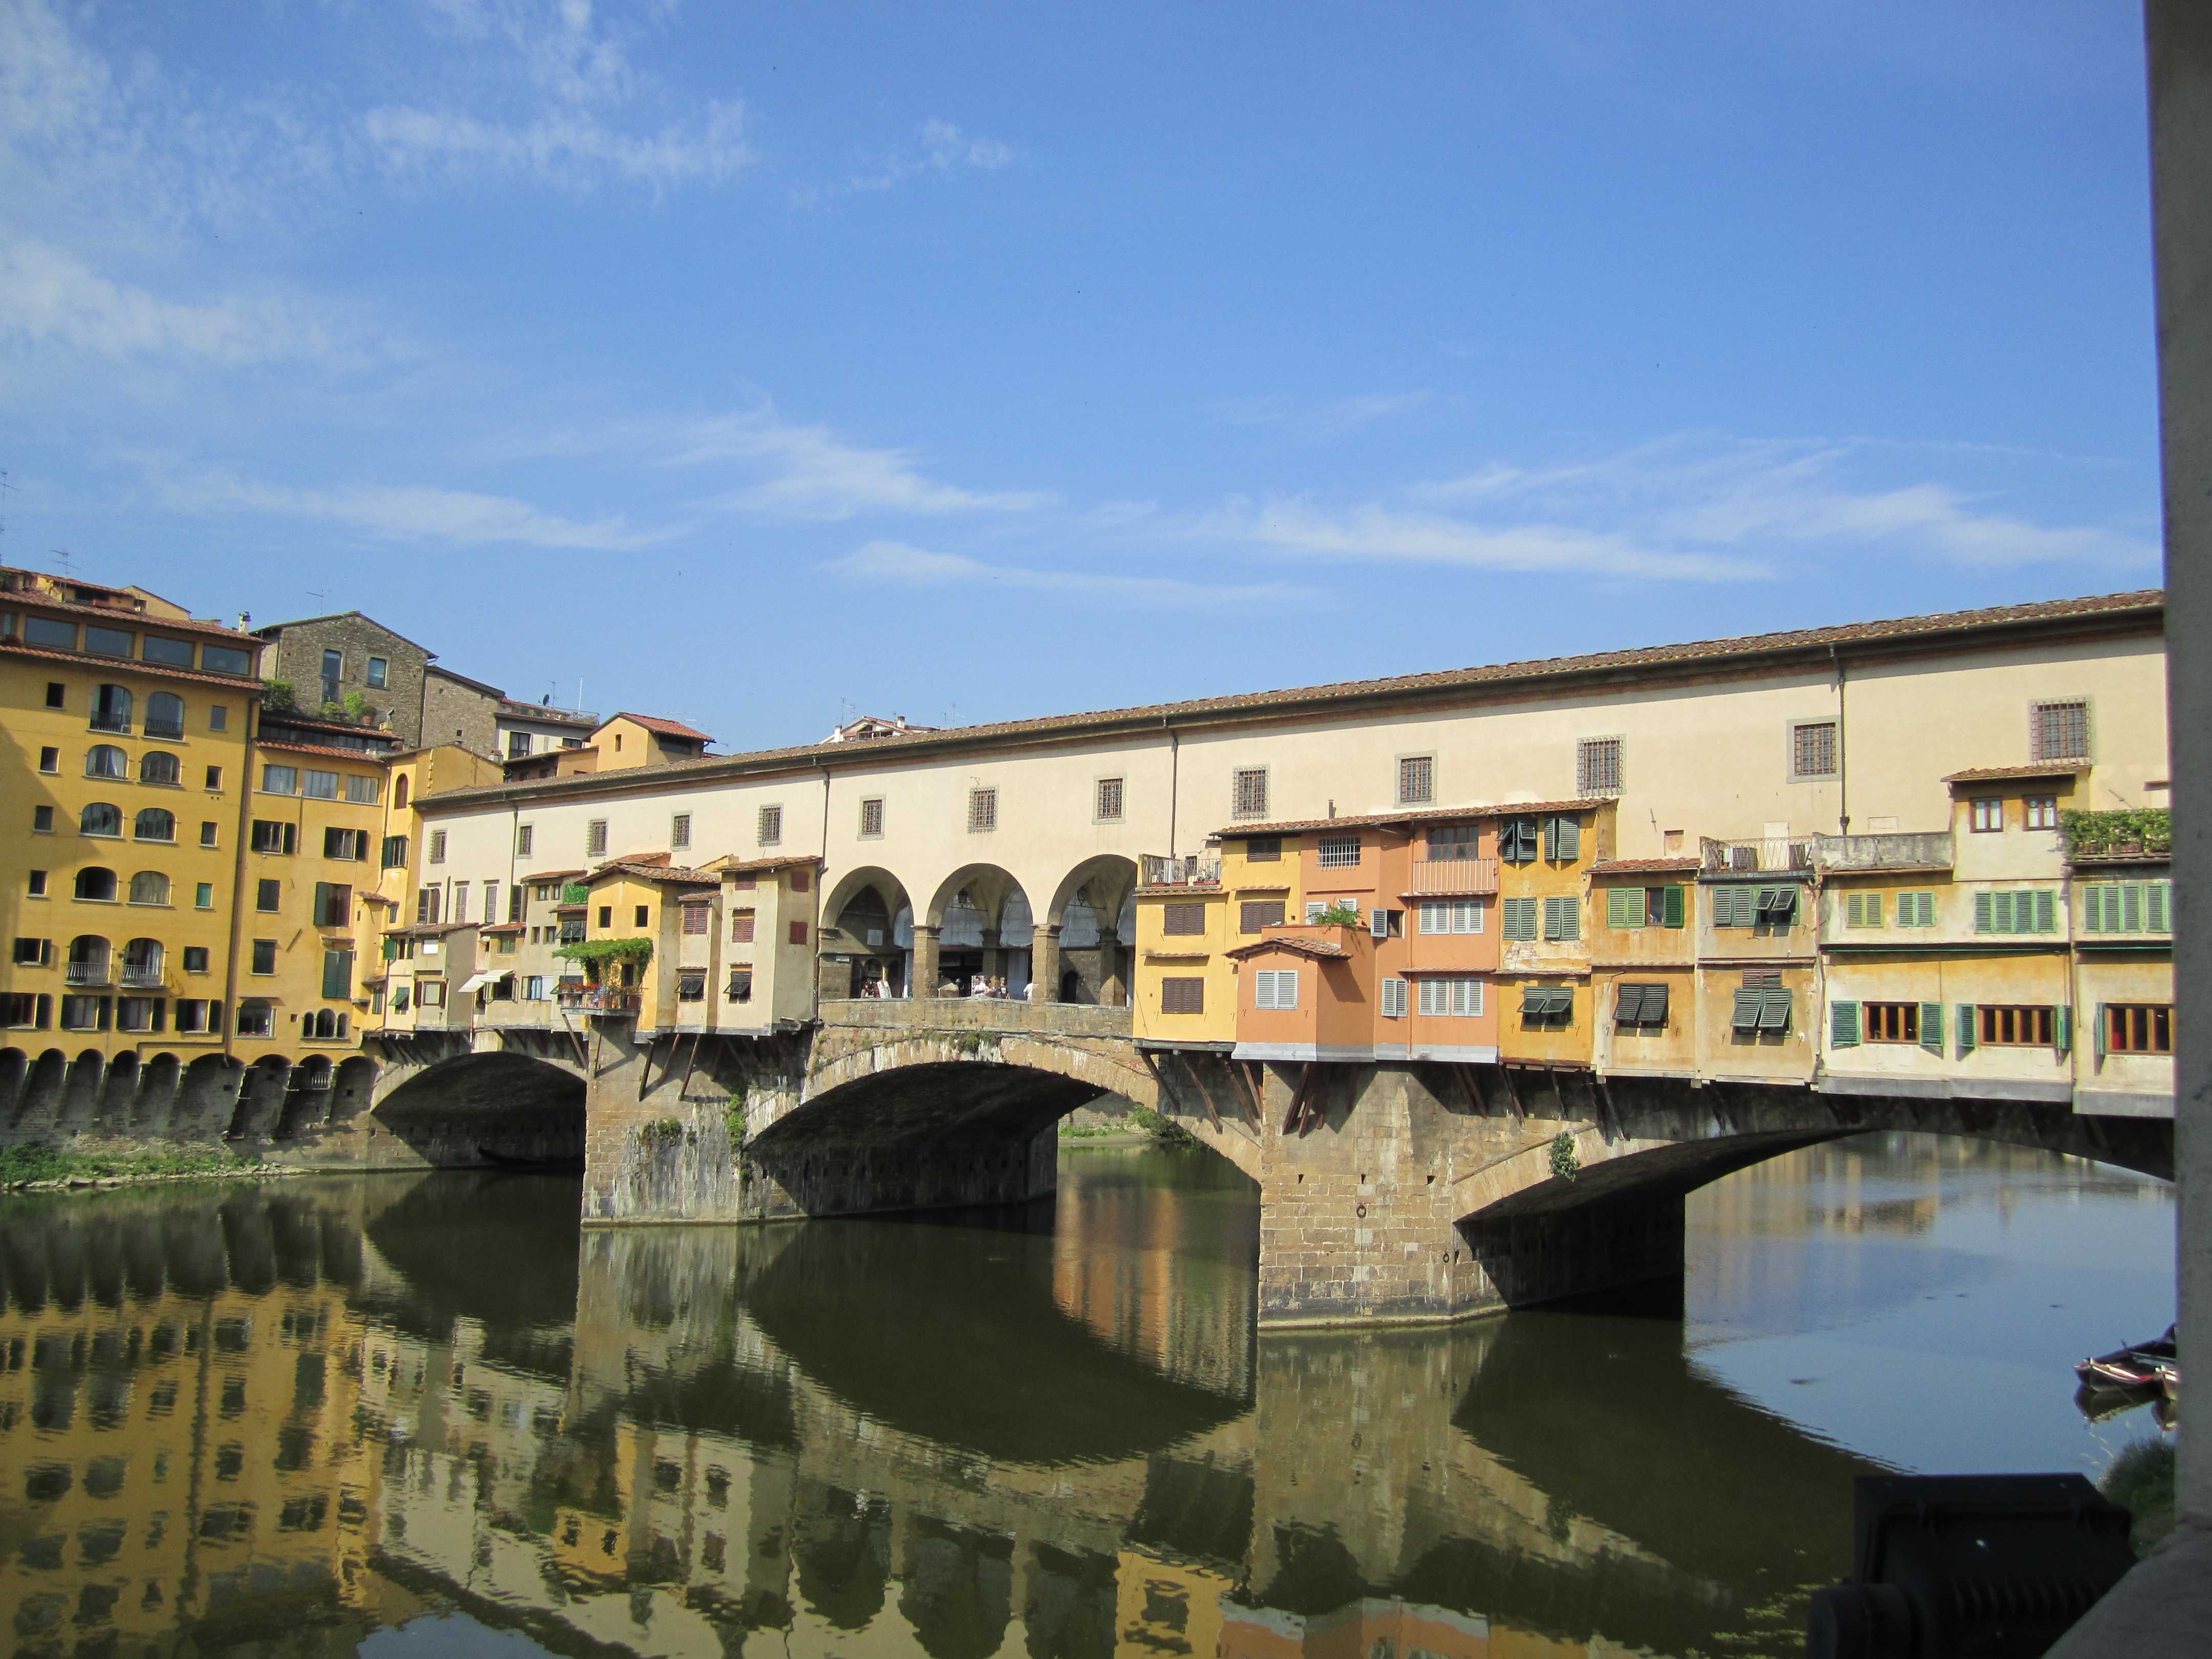 Понте-веккьо (фото) — самый красивый мост флоренции